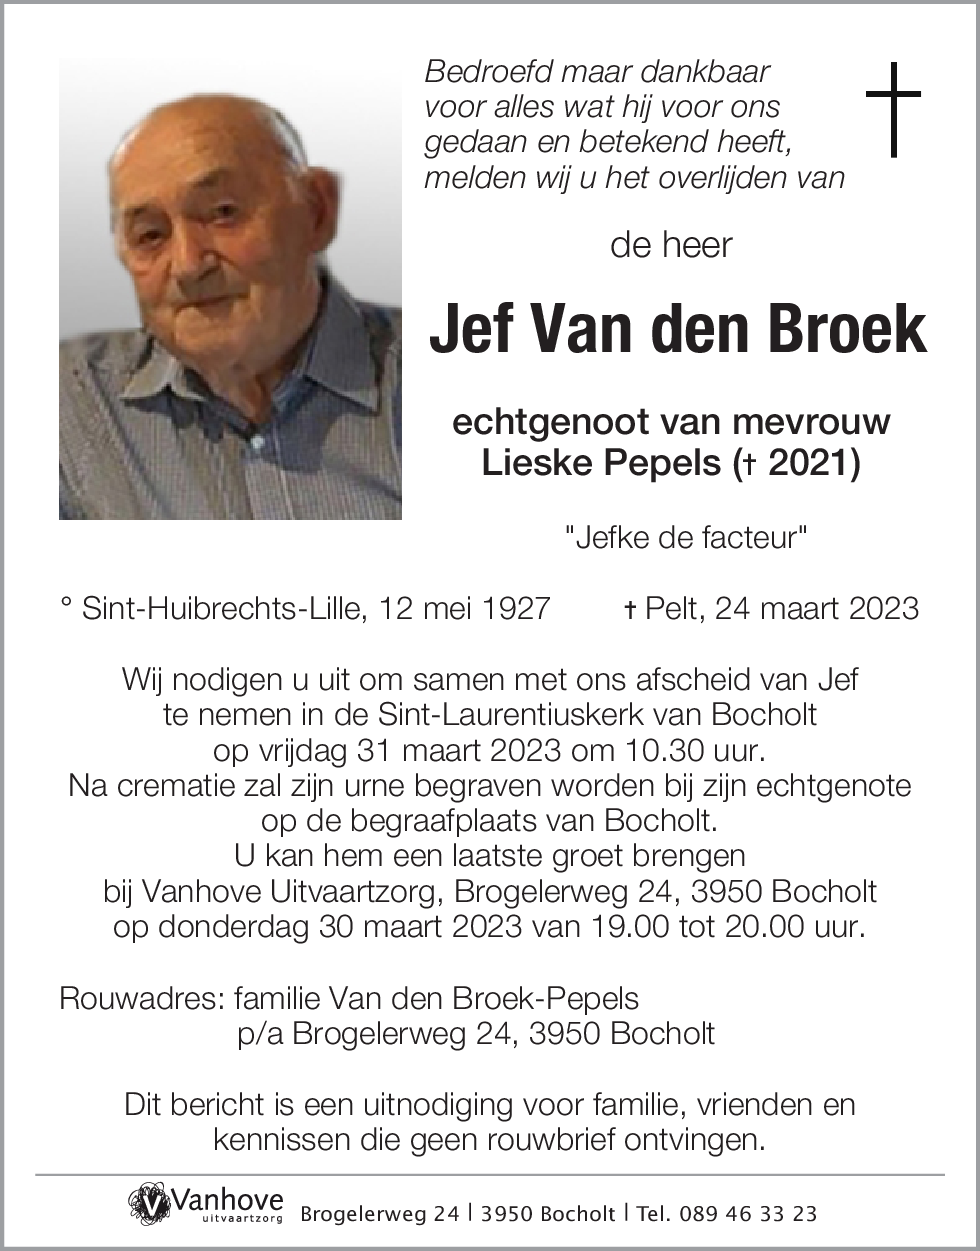 Jef Van den Broek